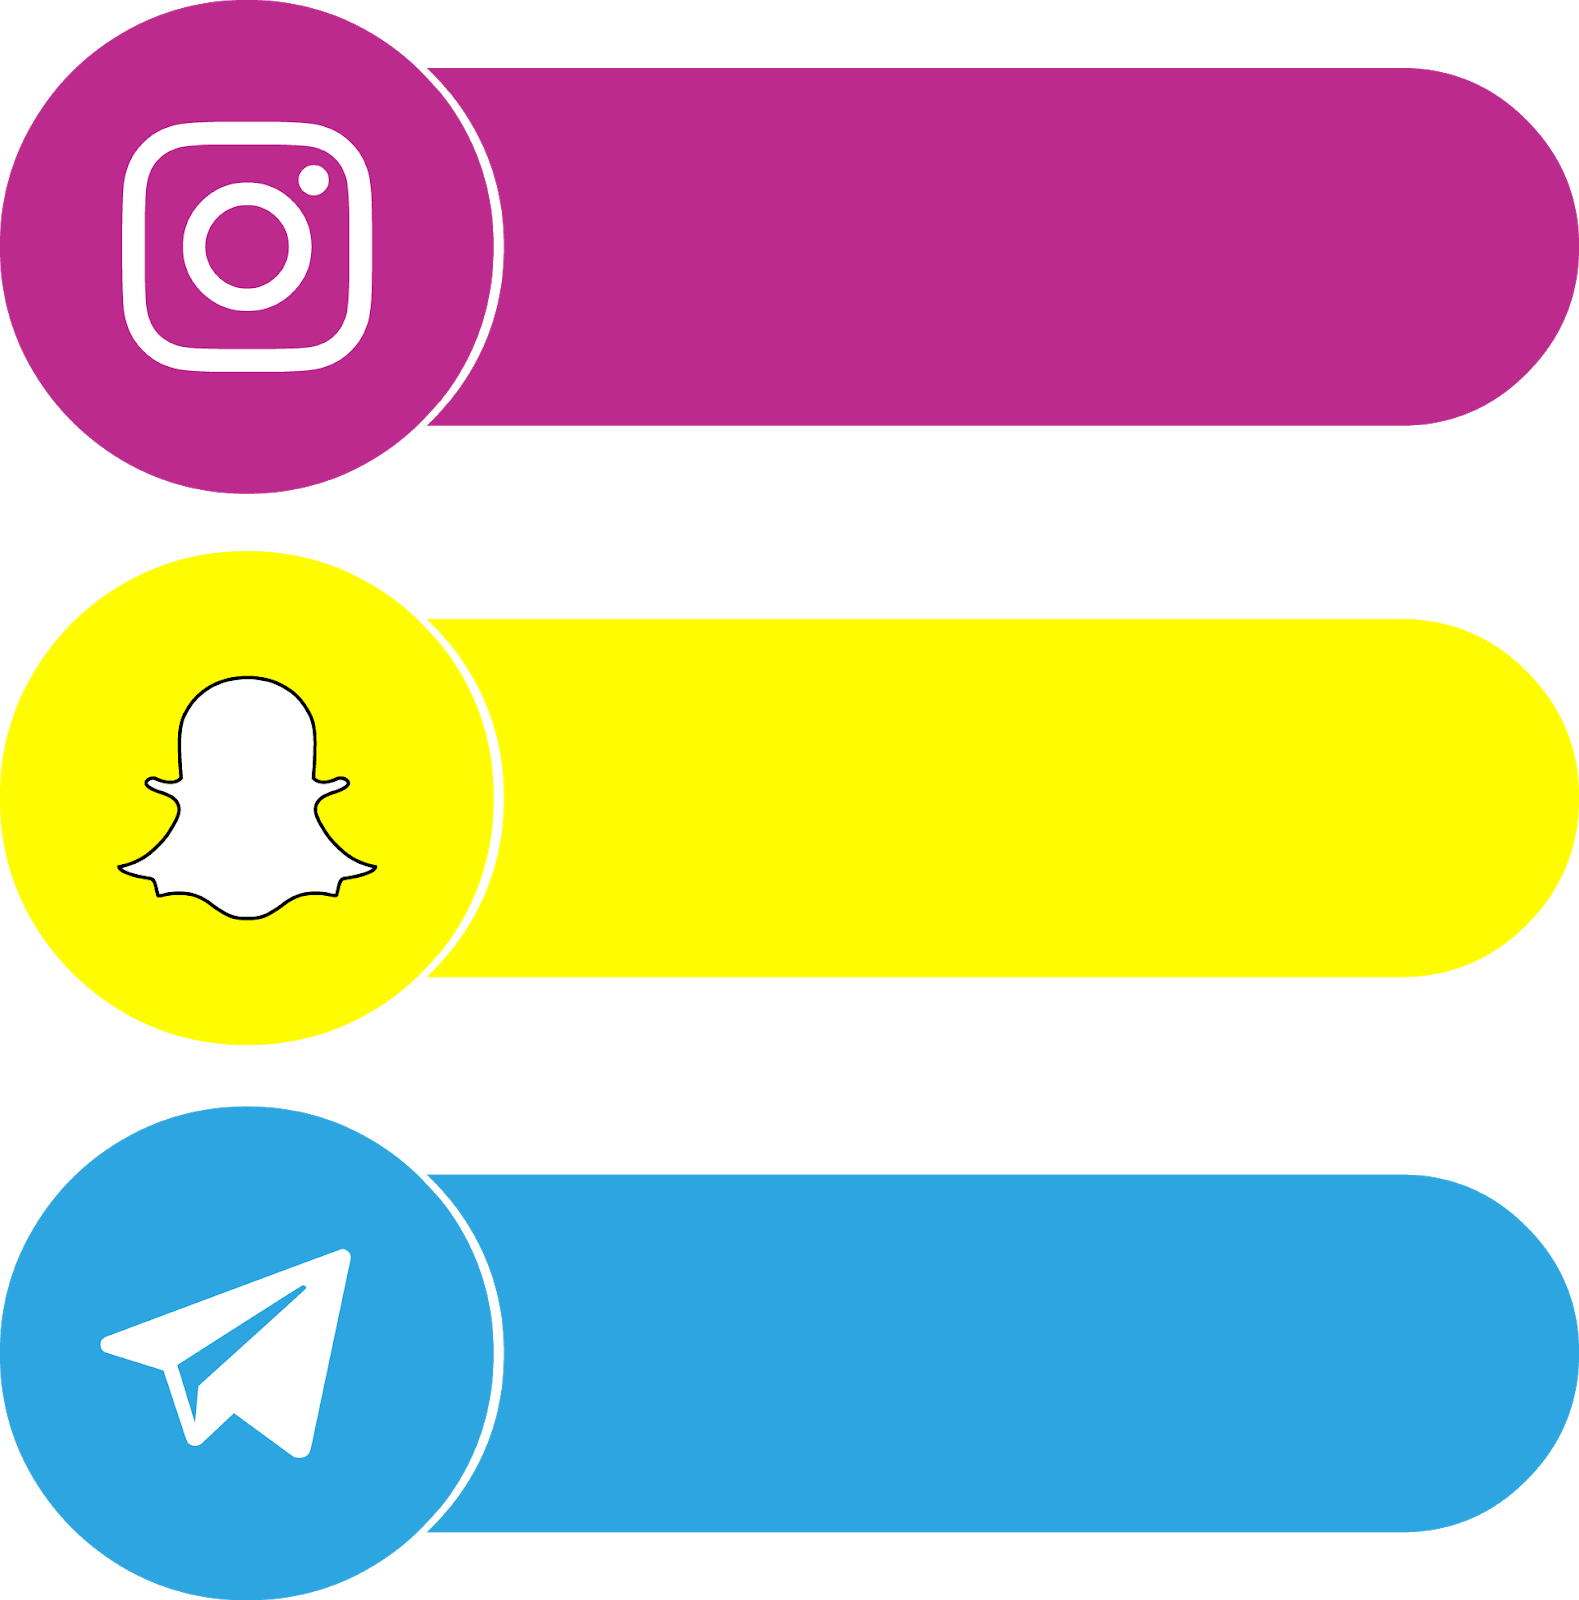 Download Icons Instagram Telegram Snapchat Svg Eps Psd Ai El Fonts Vectors